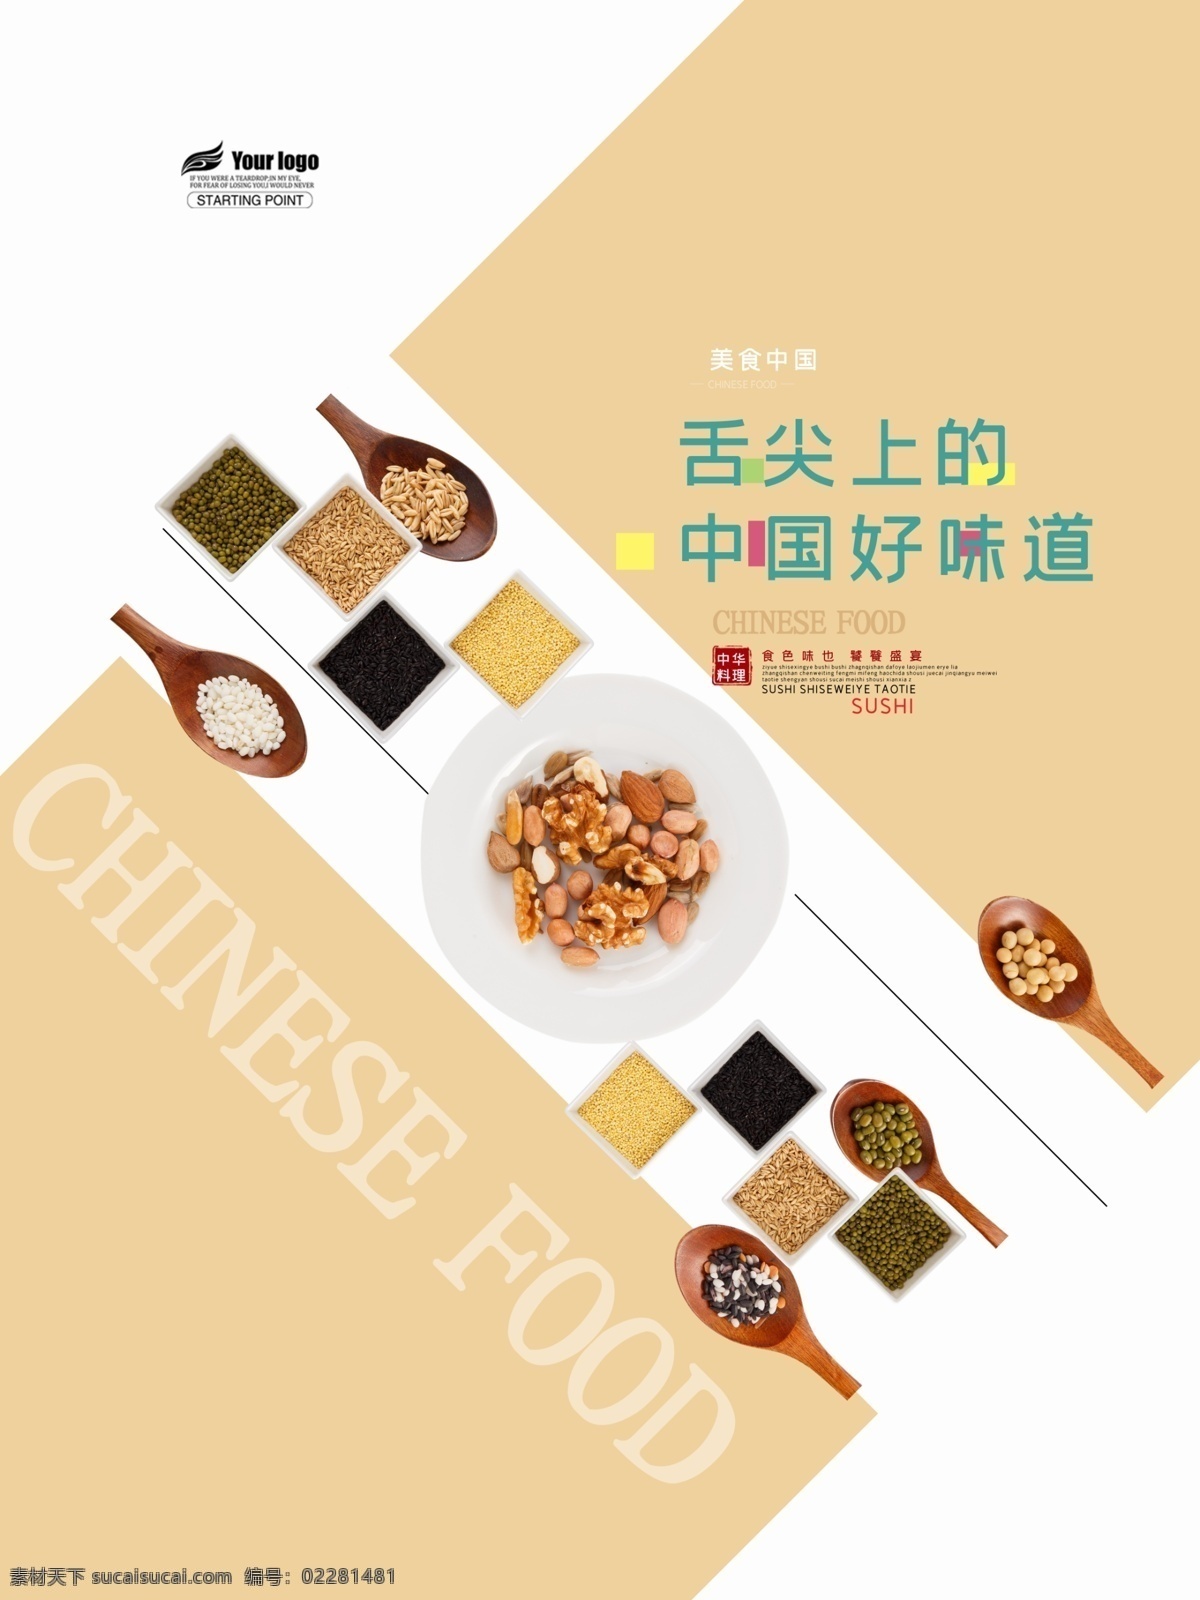 中国 好 味道 五谷杂粮 海报 食品 美食海报 广告 美食广告 五谷杂粮海报 中国味道 健康 饮食